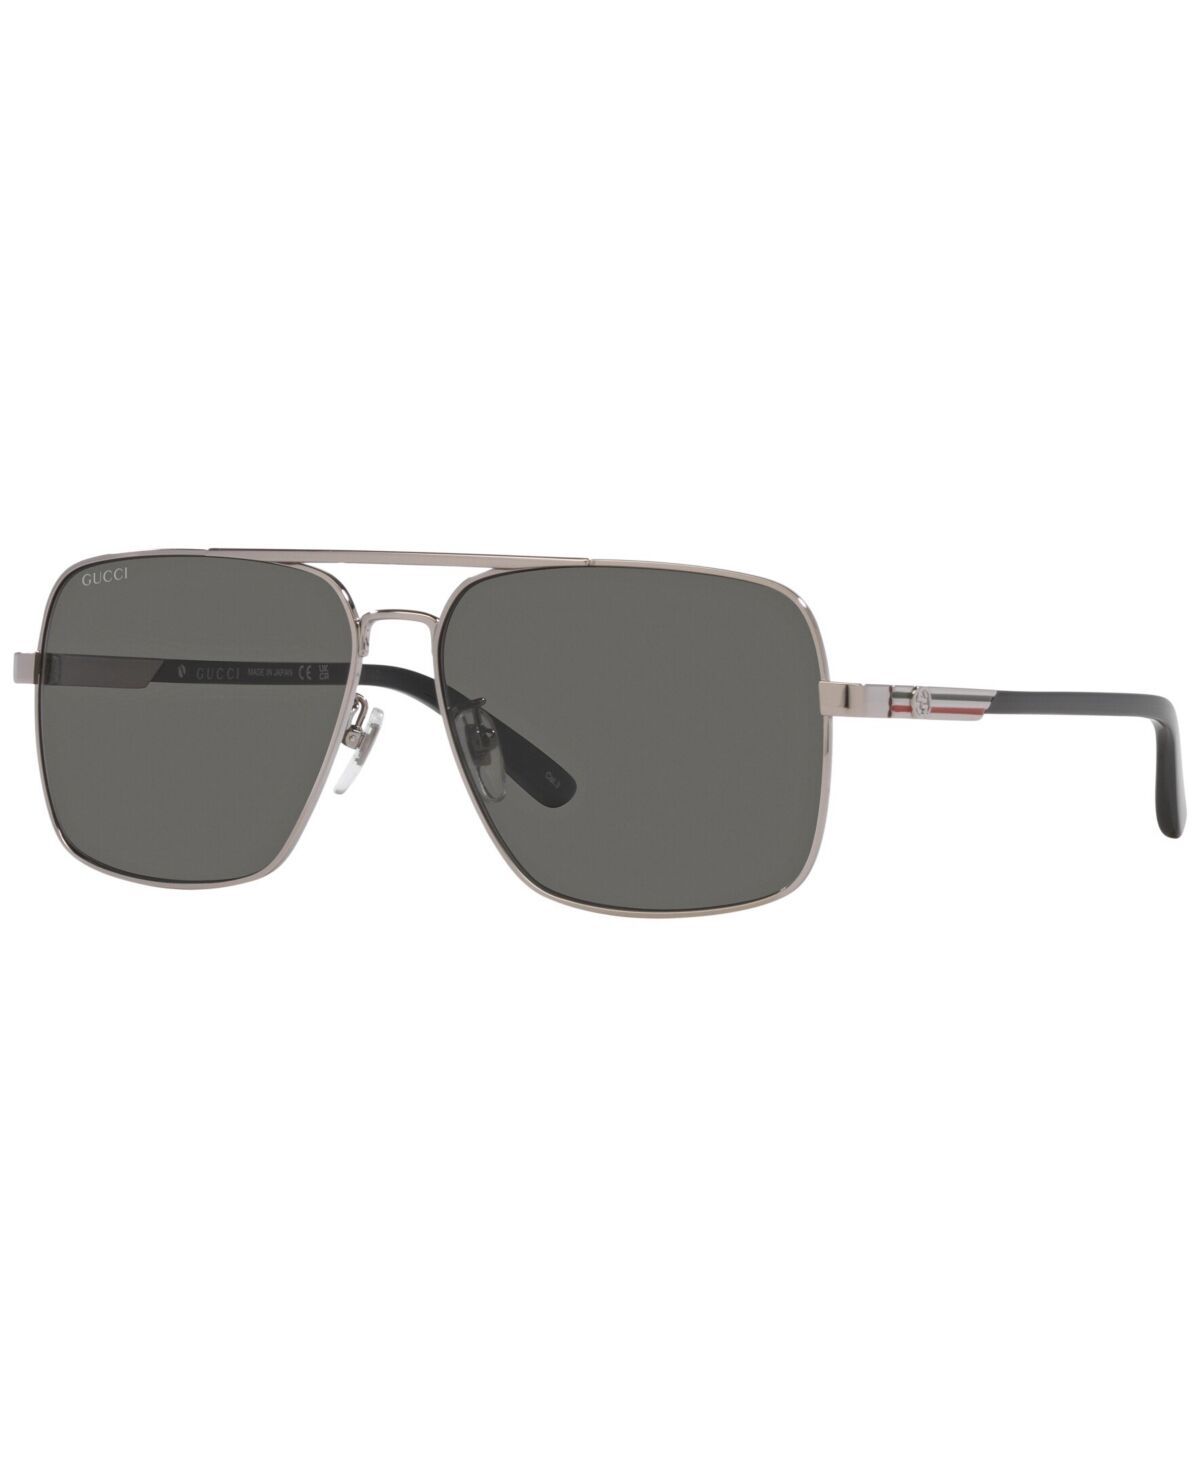 Gucci Men's Sunglasses, GG1289S - Silver-Tone